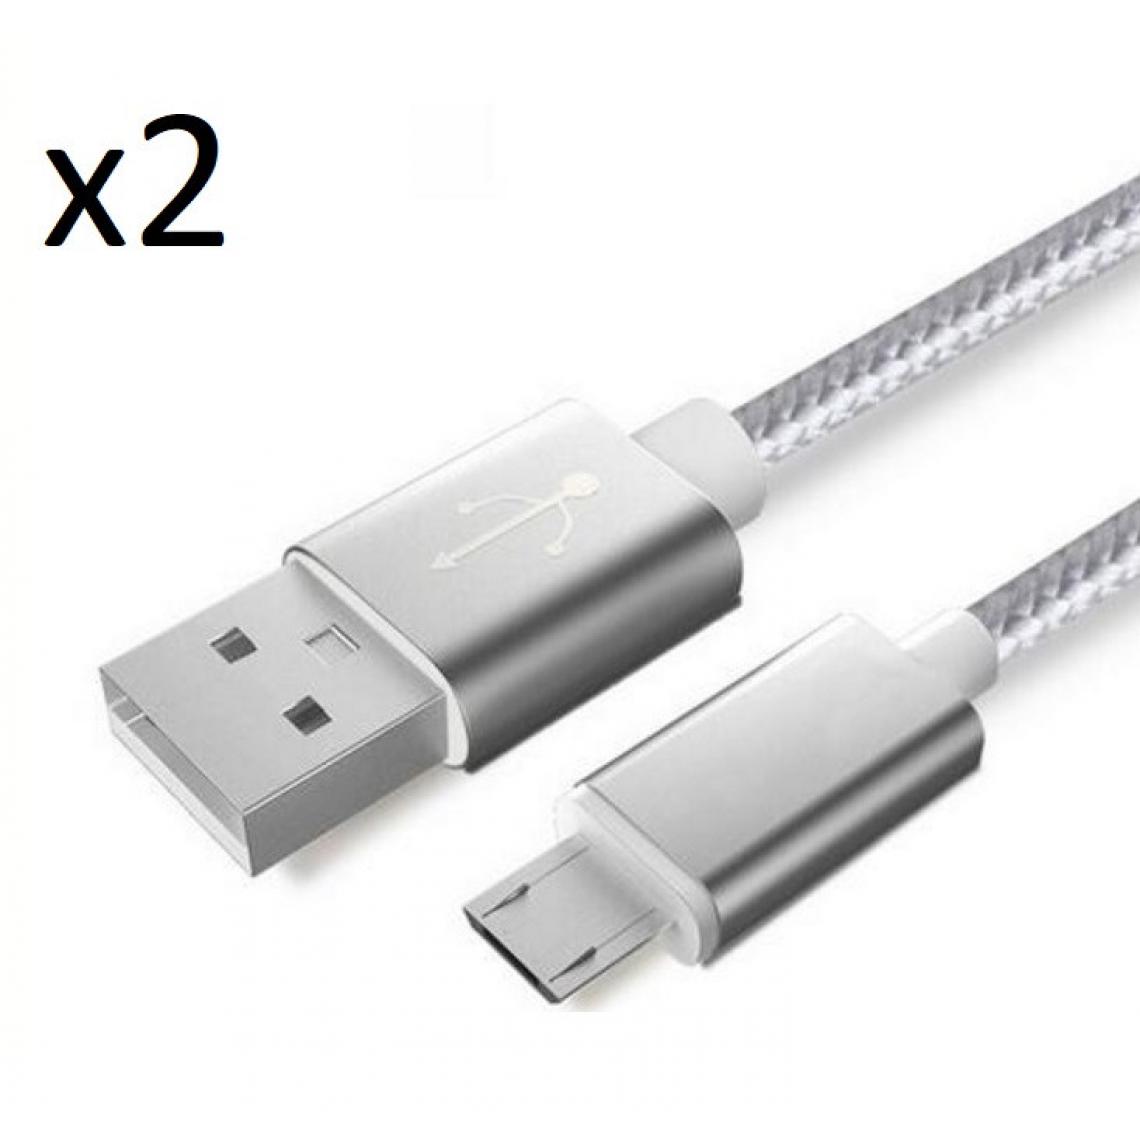 Shot - Pack de 2 Cables Metal Nylon Micro USB pour XIAOMI Redmi Note 6 Smartphone Android Chargeur (ARGENT) - Chargeur secteur téléphone